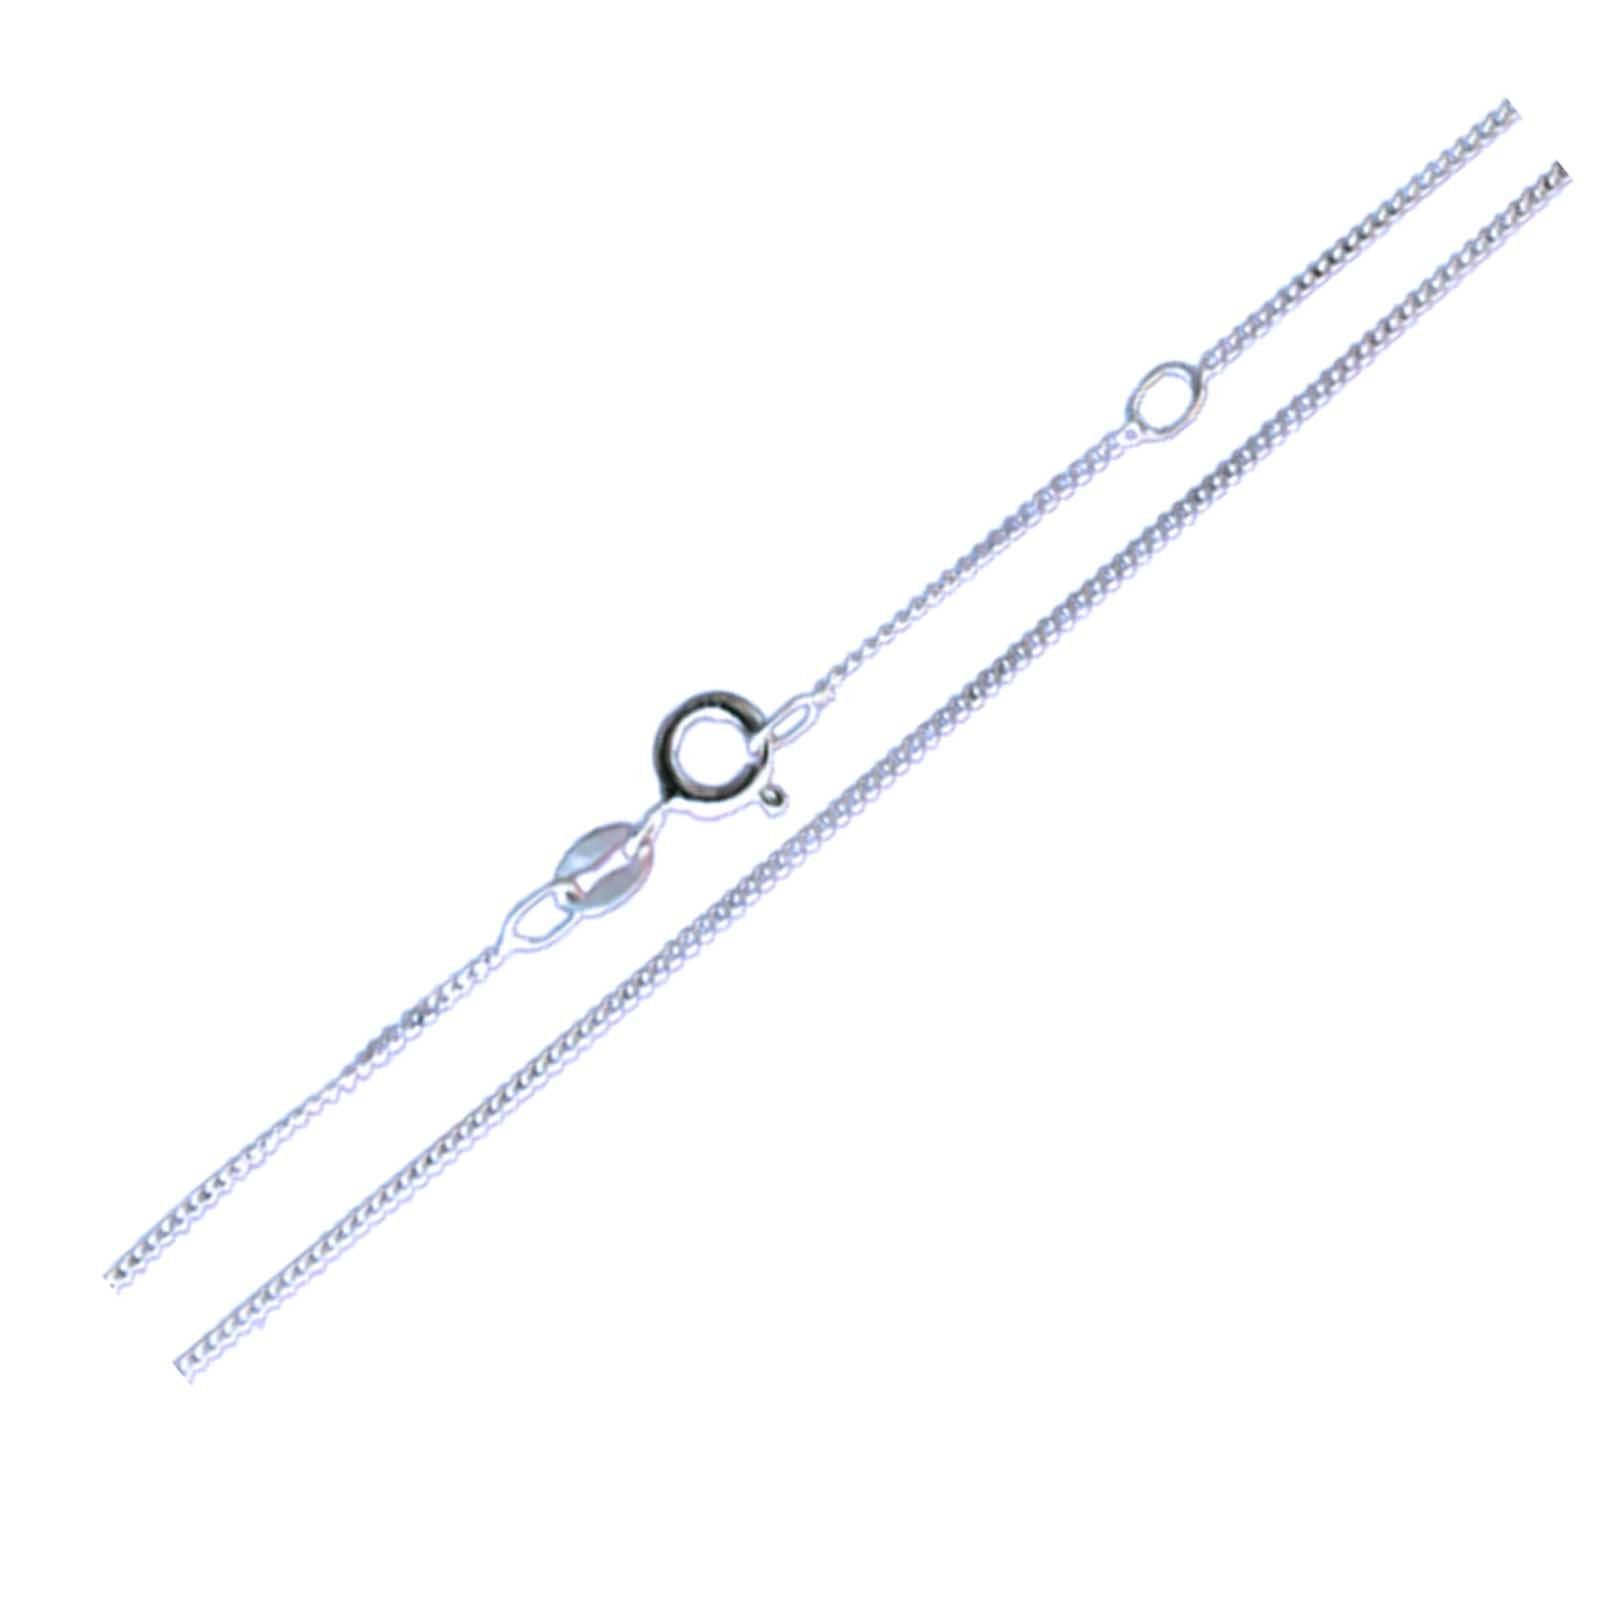 schmuck23 Kettenanhänger (Halskette mit Anhänger), Silberanhänger Halskette Kinderschmuck Kettenanhänger